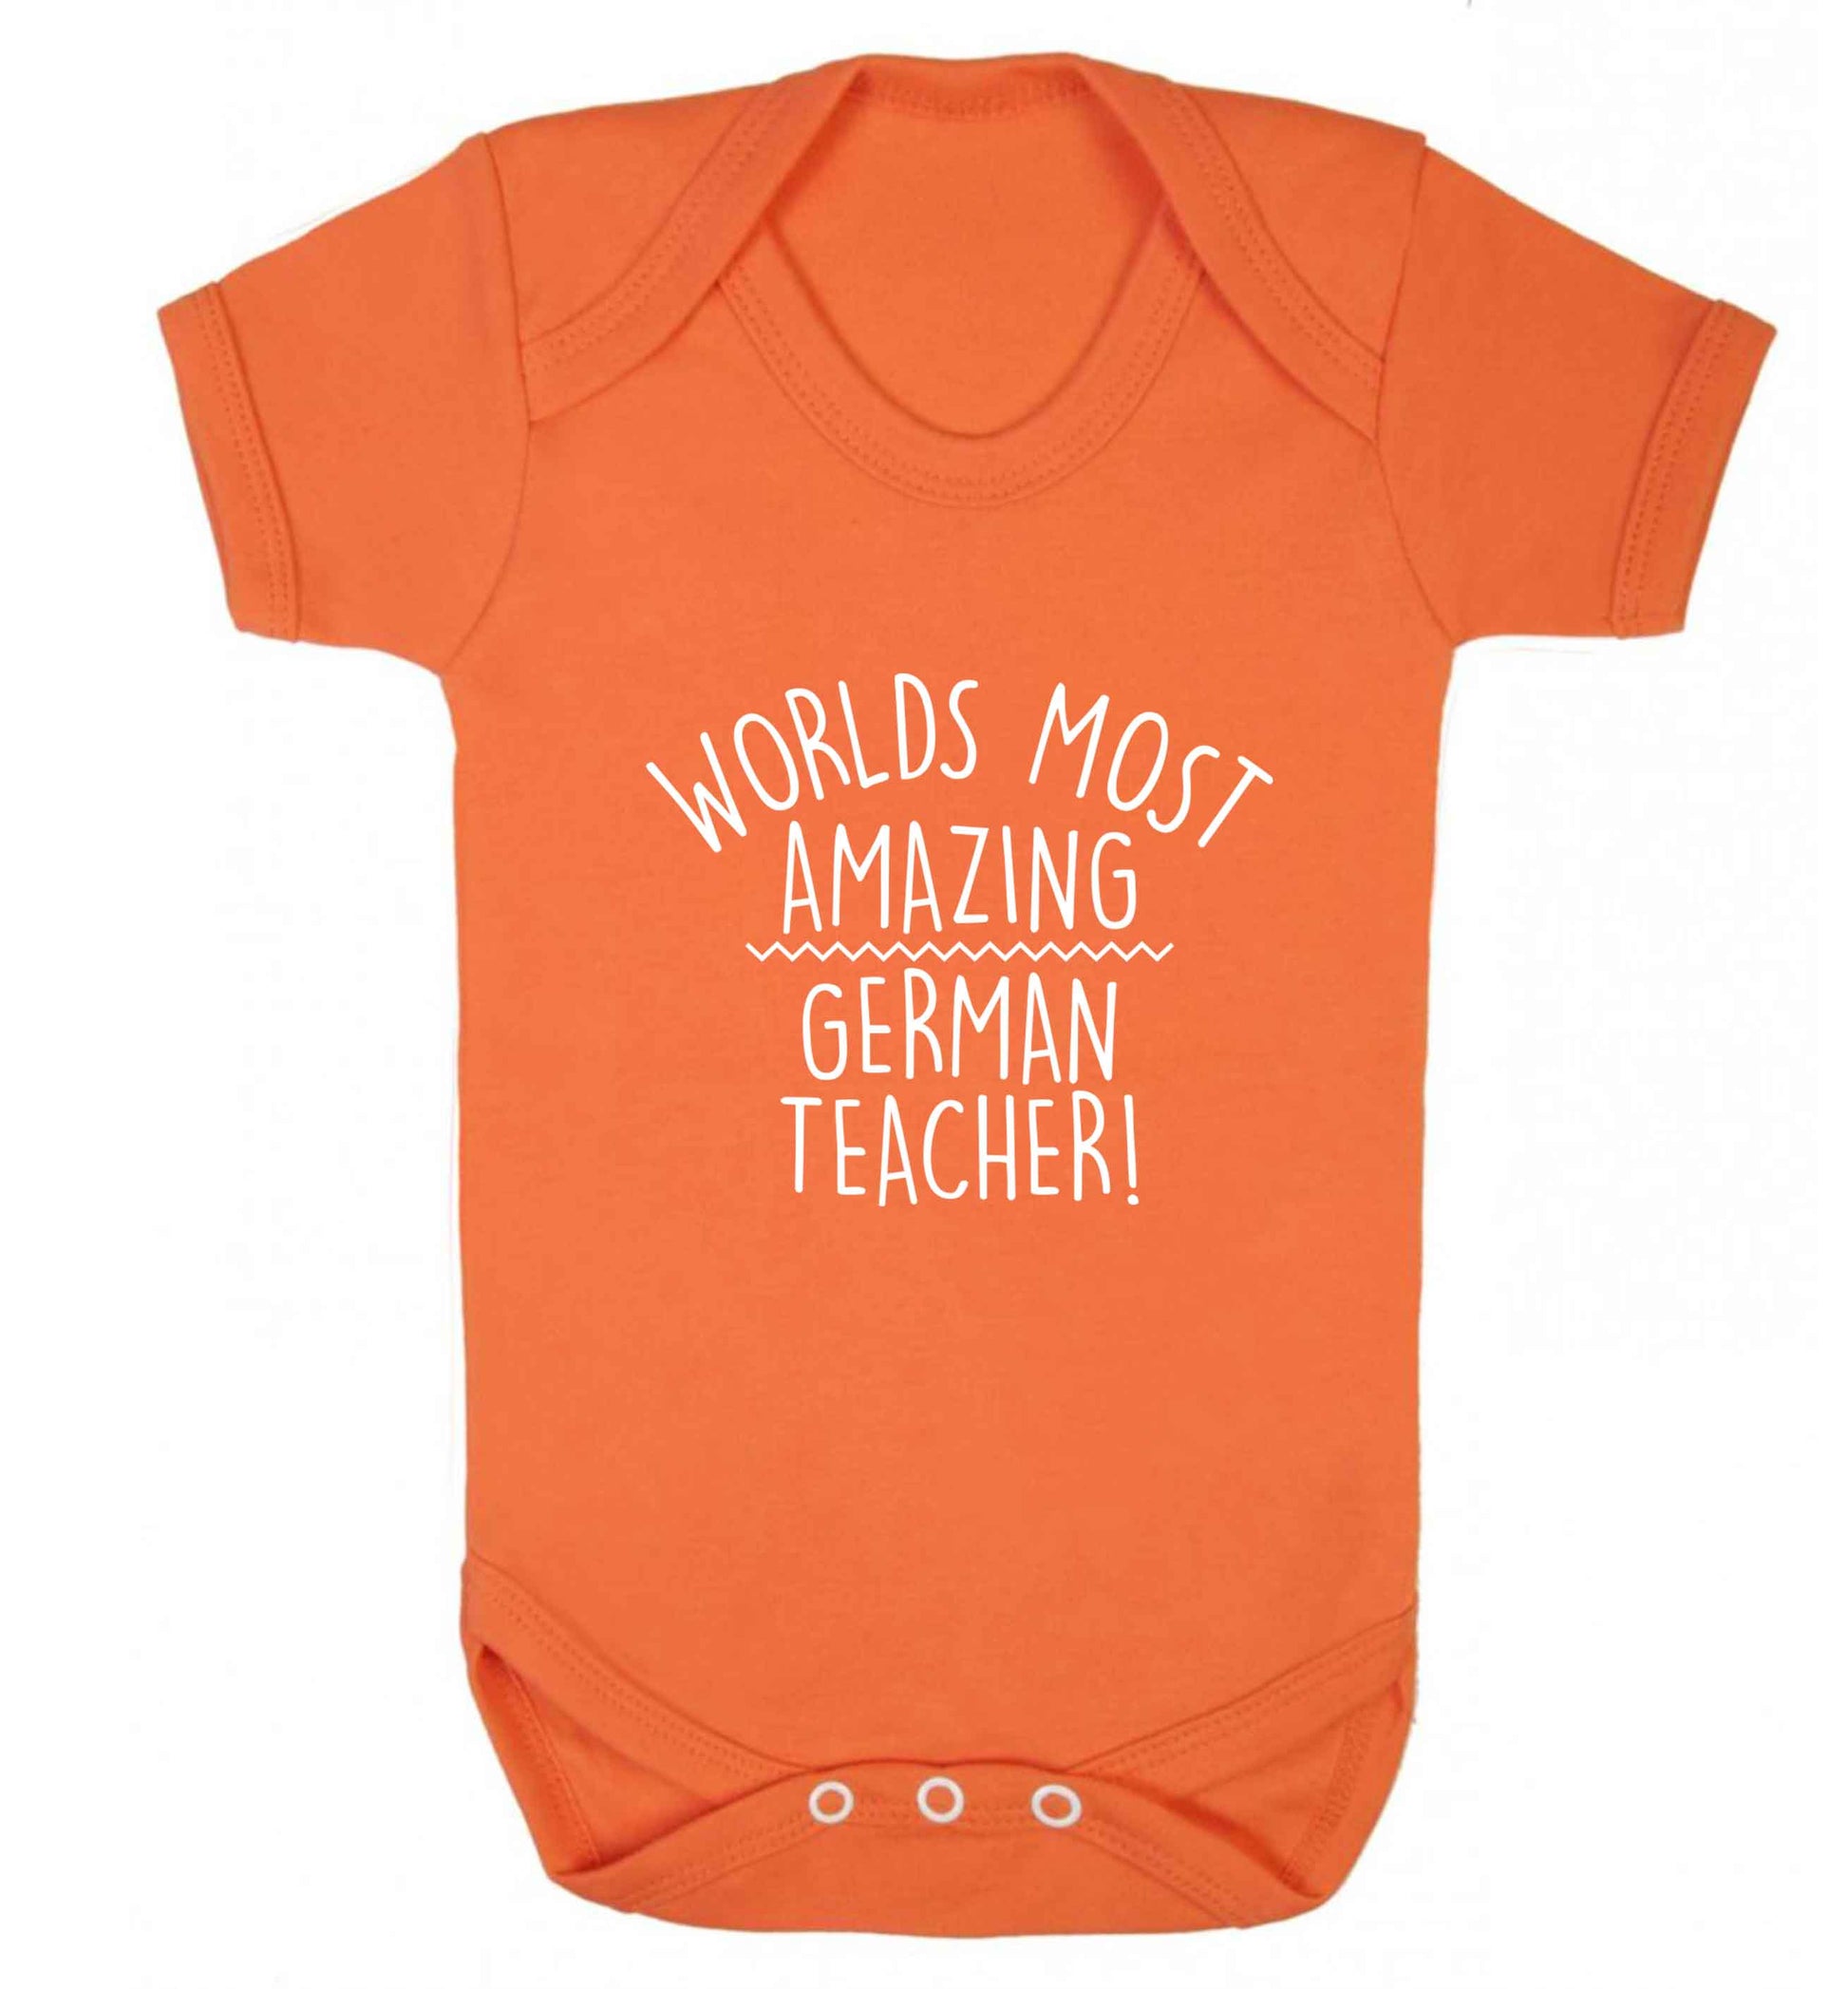 Worlds most amazing German teacher baby vest orange 18-24 months